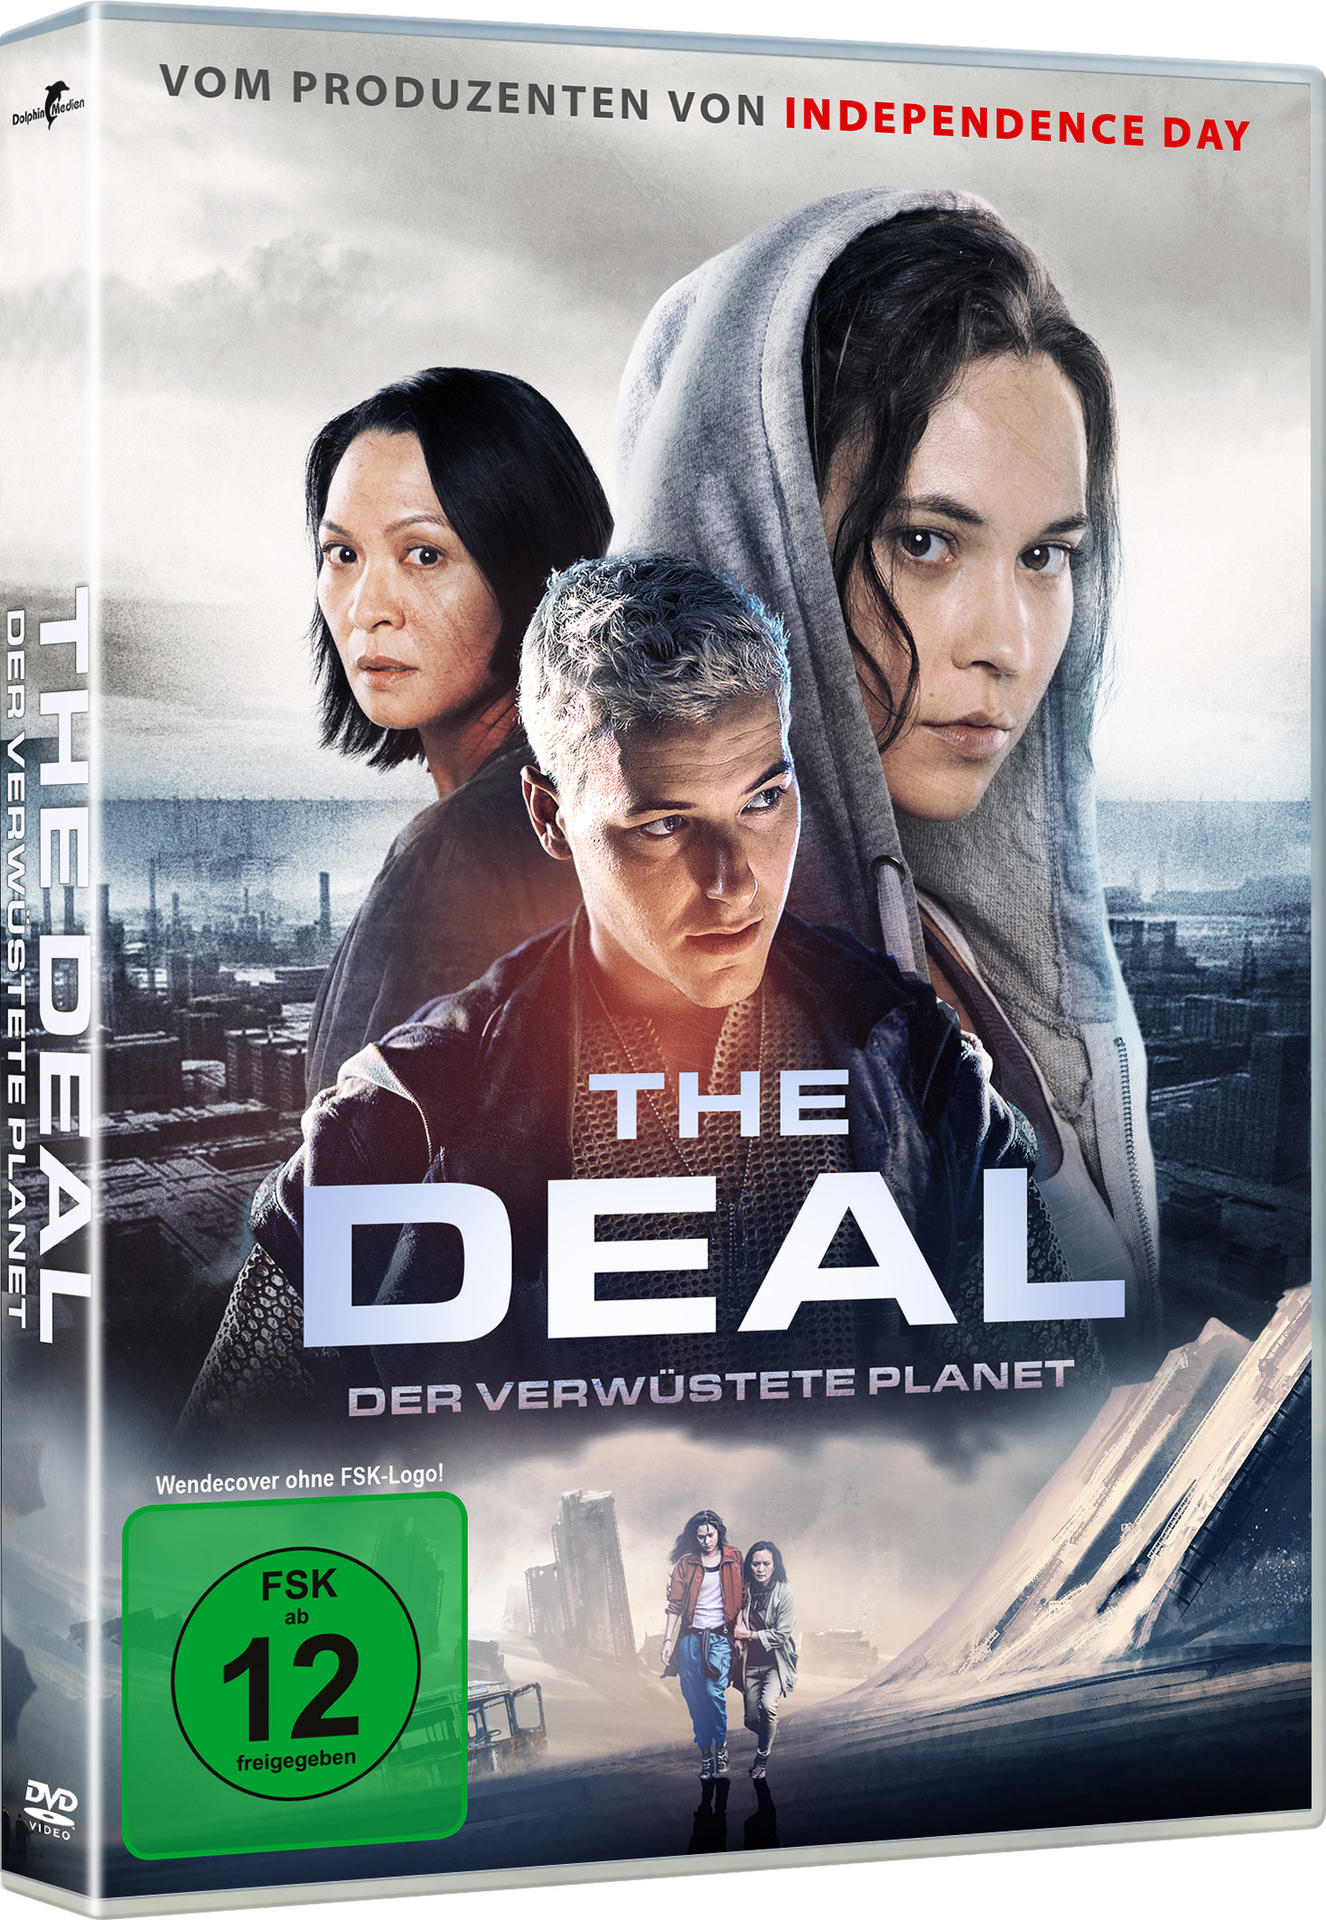 The Deal - Der verwüstete DVD Planet